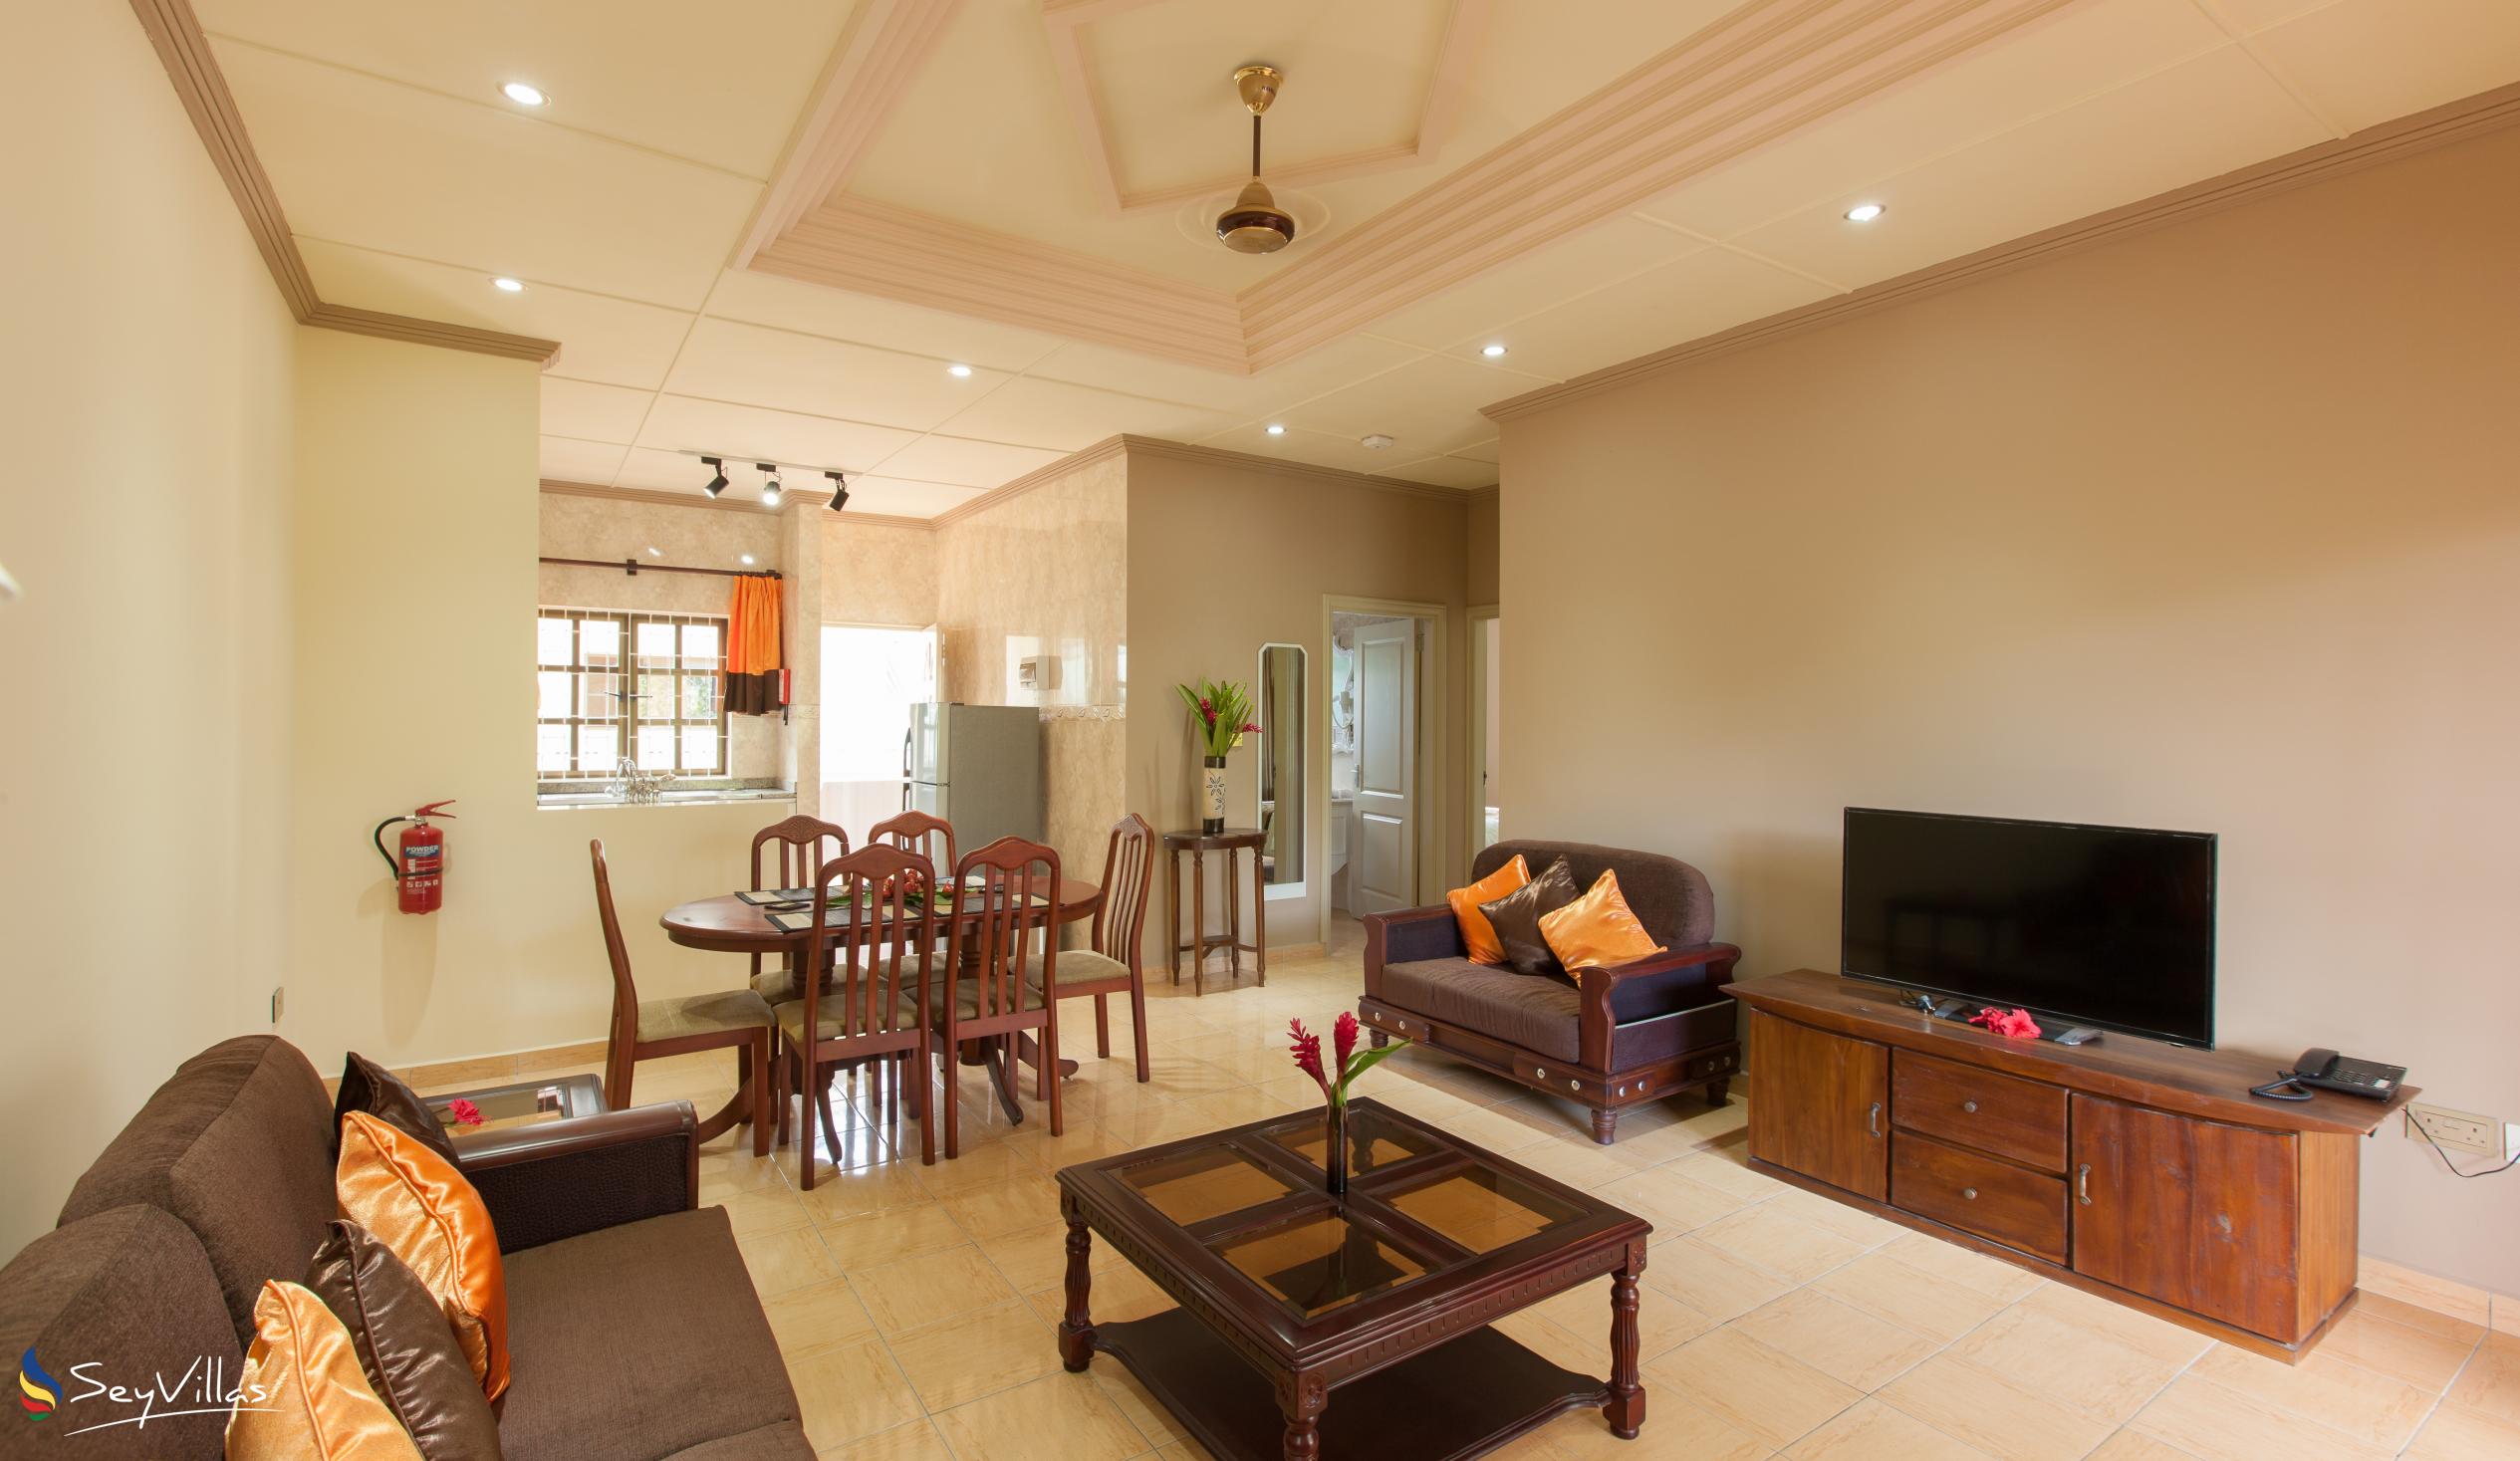 Foto 27: Chez Bea Villa - Appartamento con 2 camere - Praslin (Seychelles)